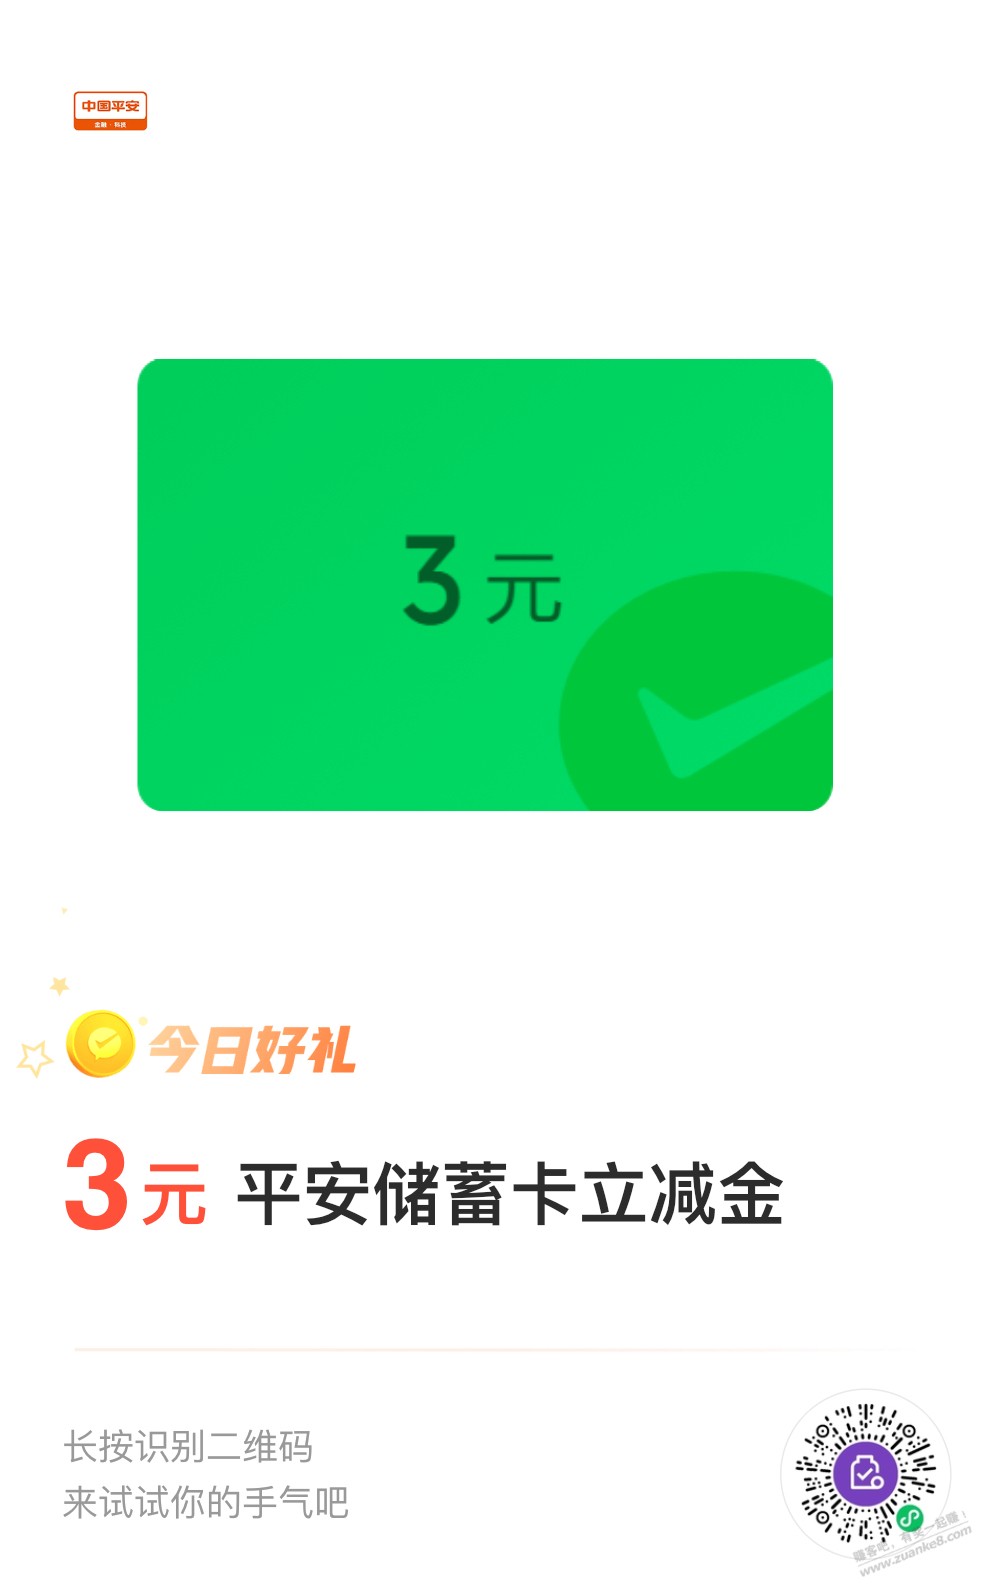 平安银行3元立减金-惠小助(52huixz.com)